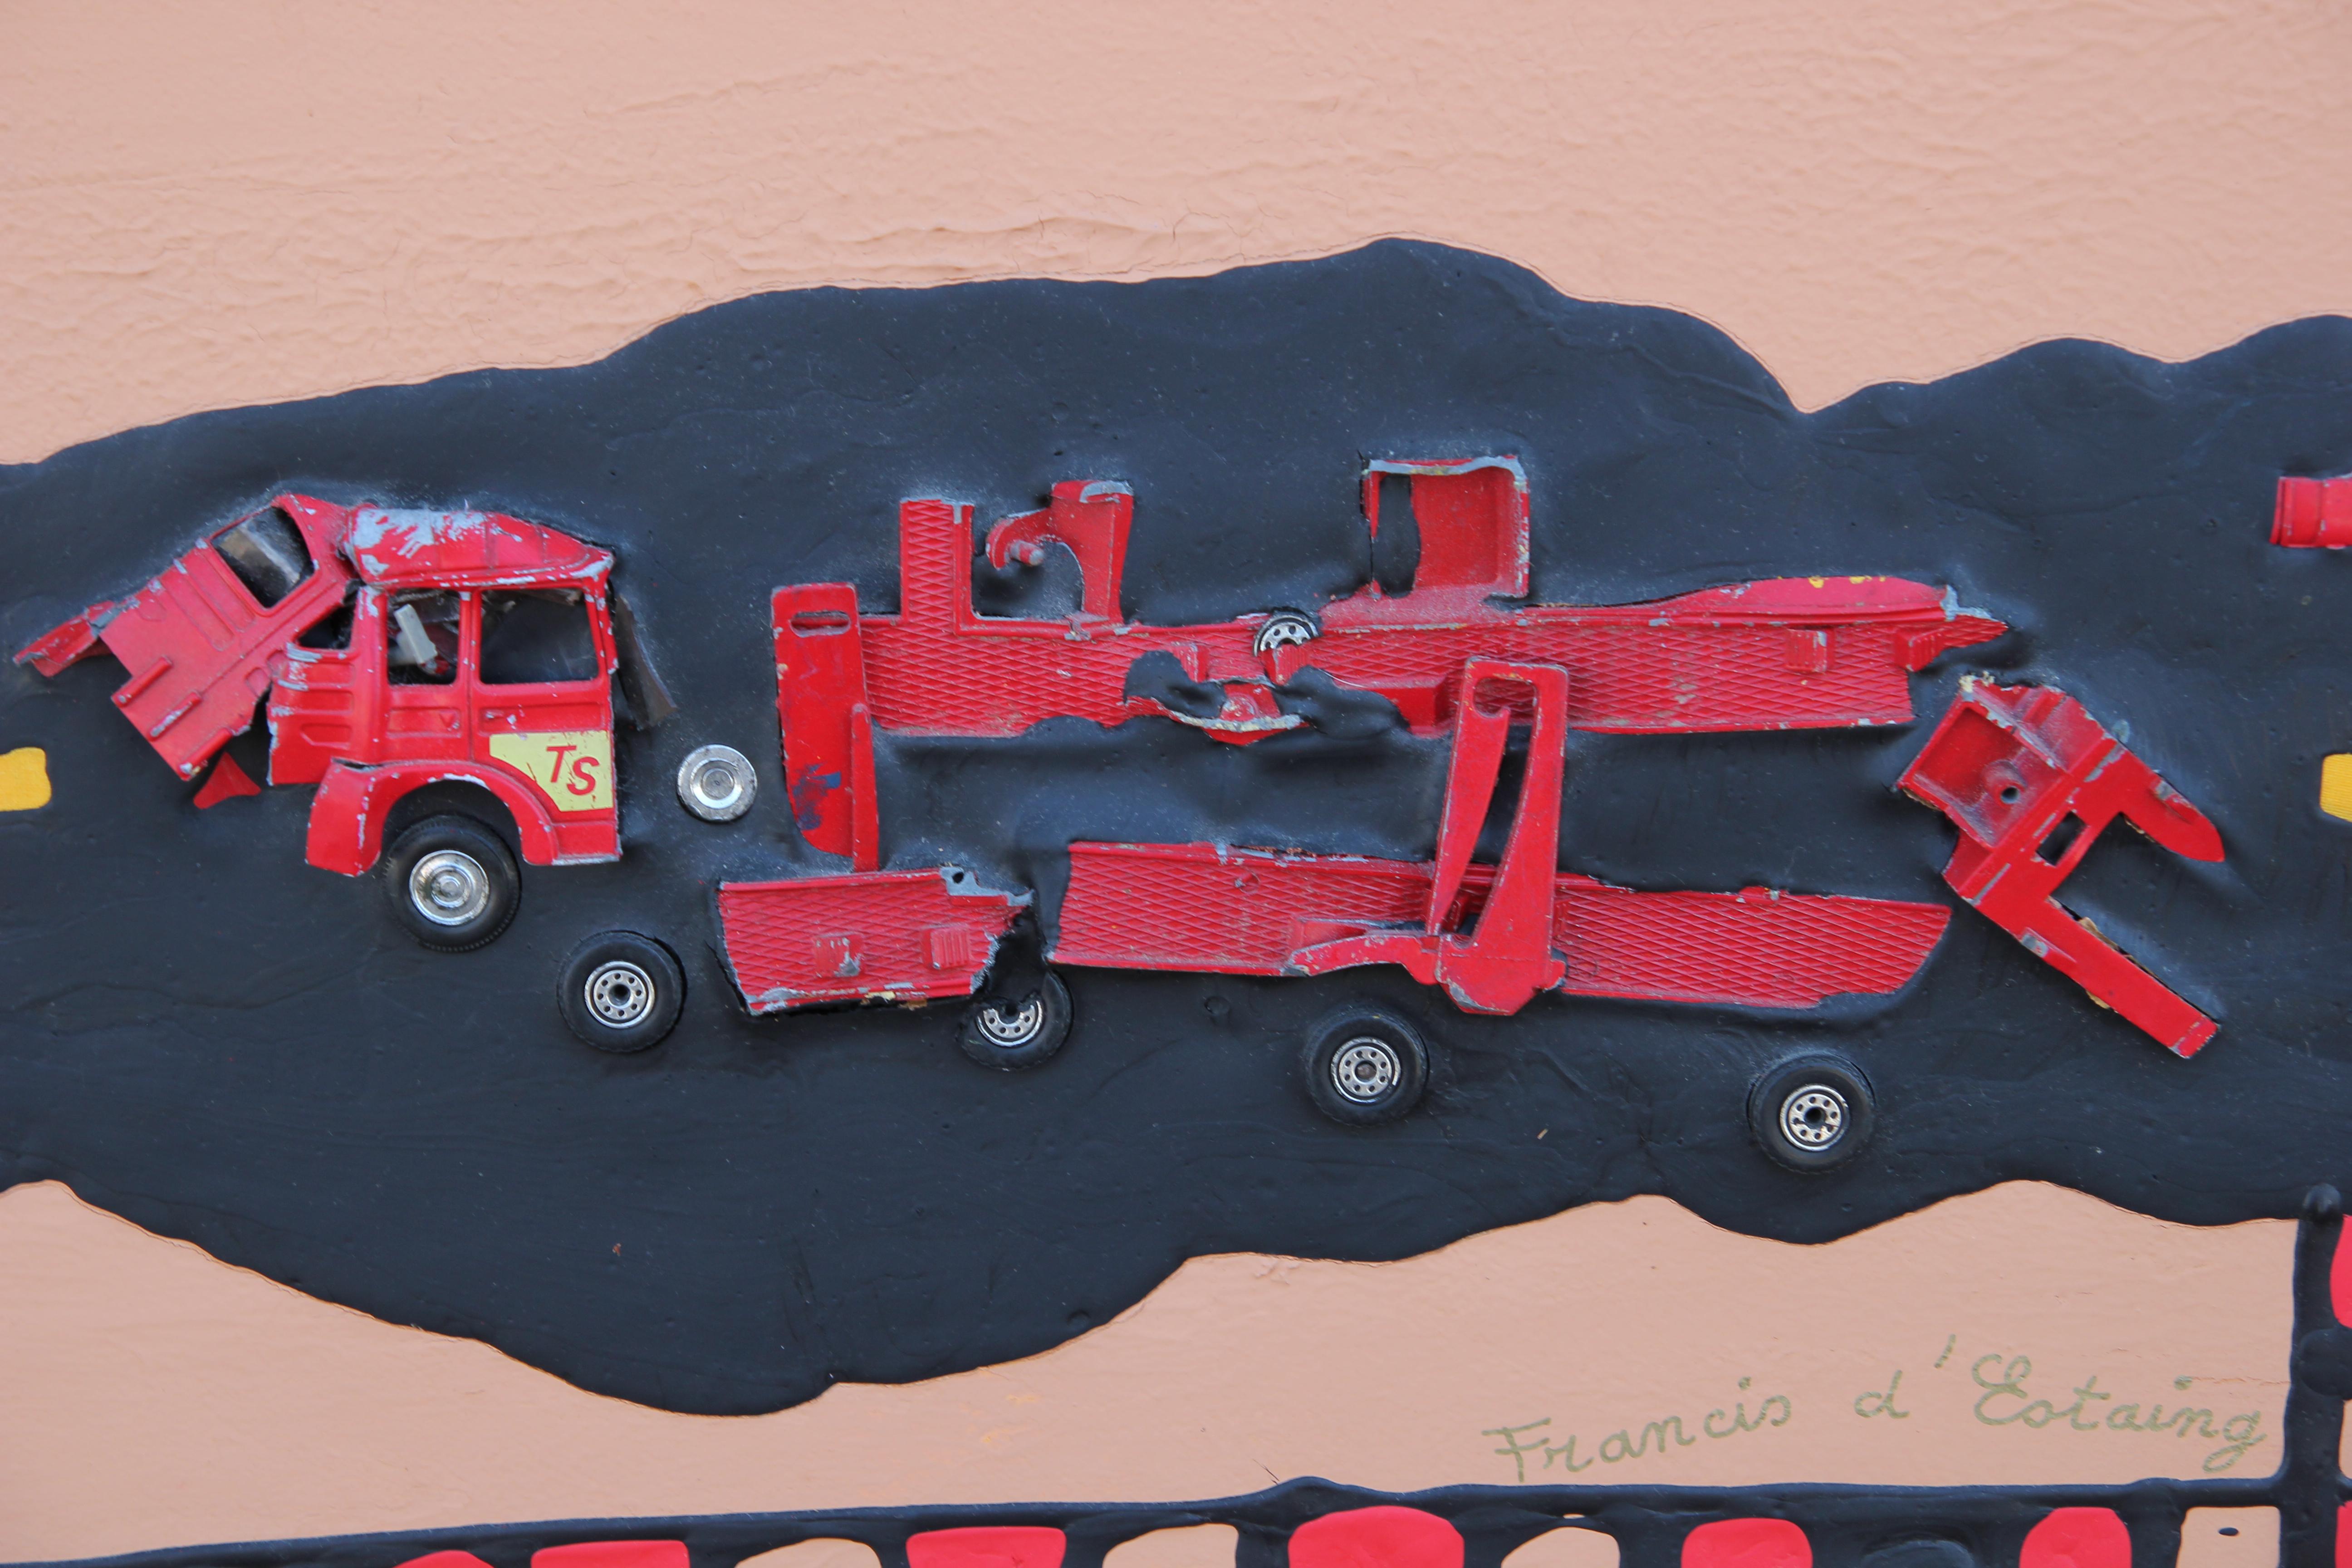 Rot Tonal Mixed Media Abstrakt mit Spielzeug Autos (Moderne), Mixed Media Art, von Francis d'Estaing